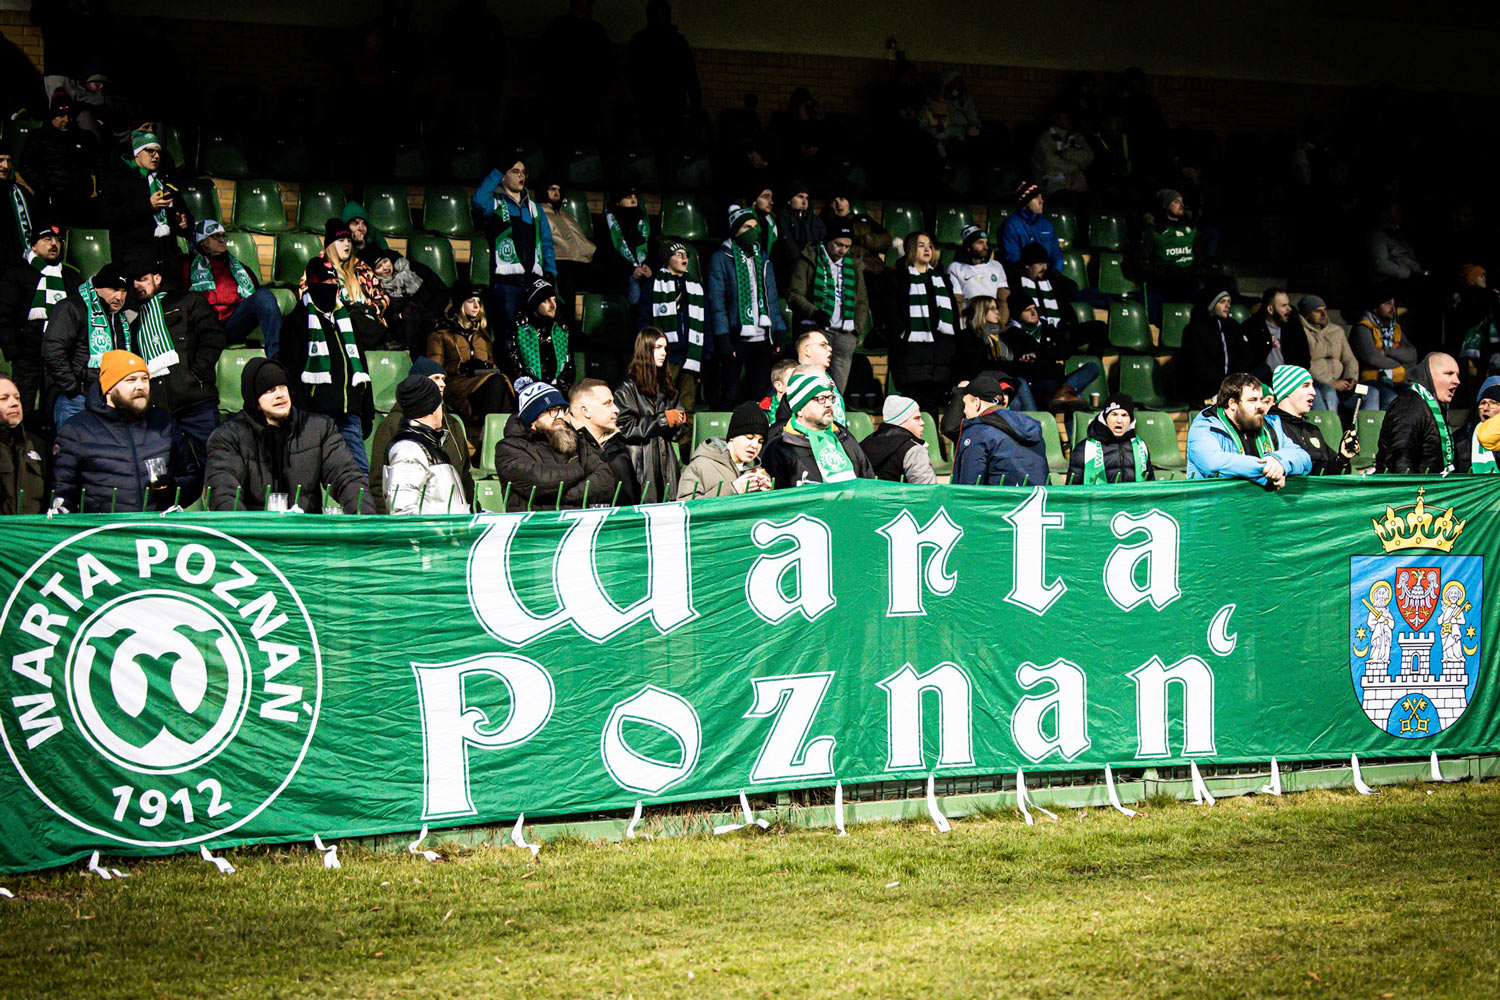 Kup bilet na mecz Warta Poznań - Miedź Legnica, kibice Warty na stadionie w Grodzisku Wlkp.